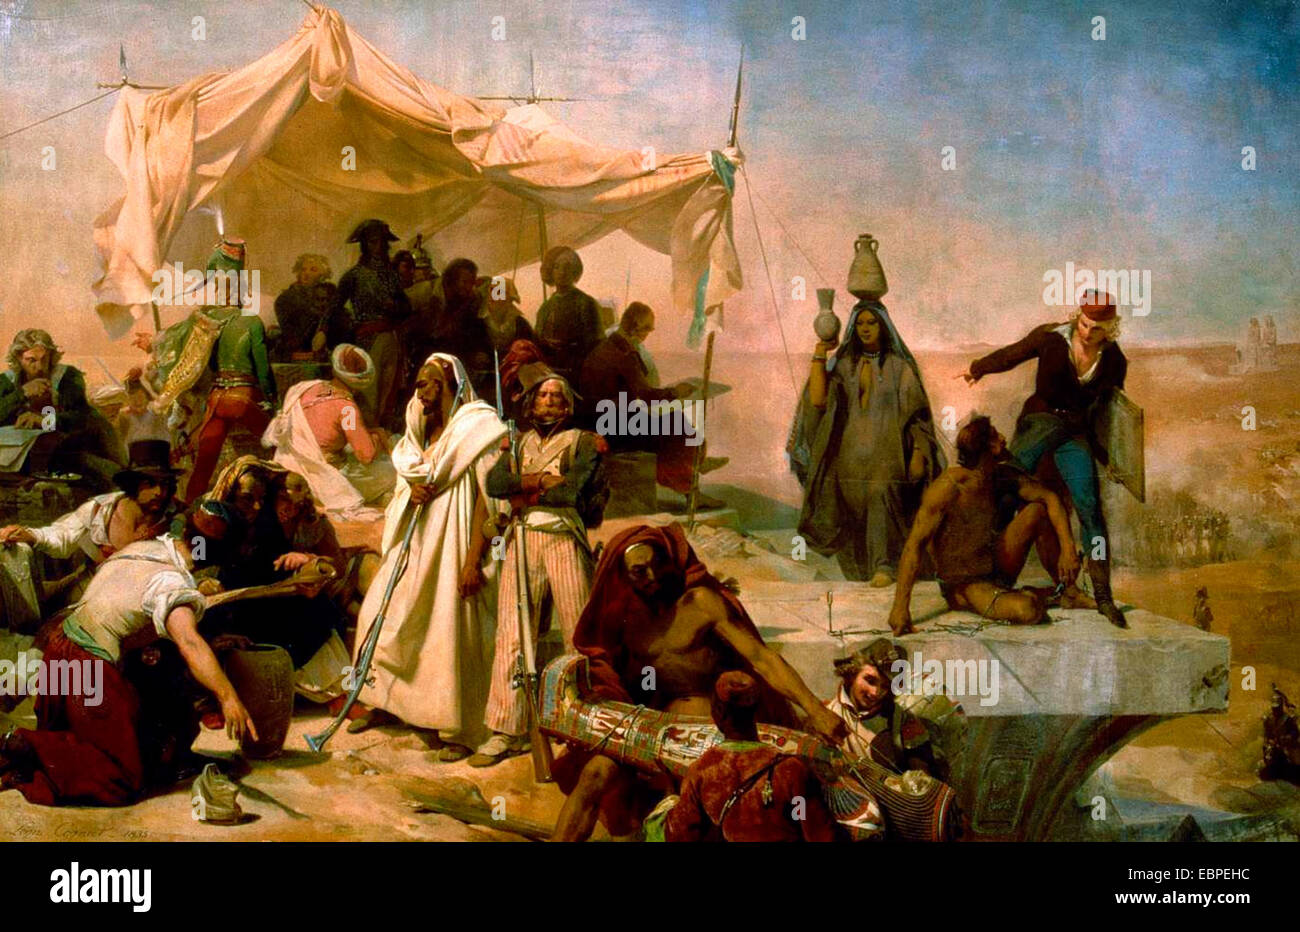 L'expédition égyptienne sous les ordres de Bonaparte, peinture de Léon Cogniet, début du xixe siècle. Banque D'Images